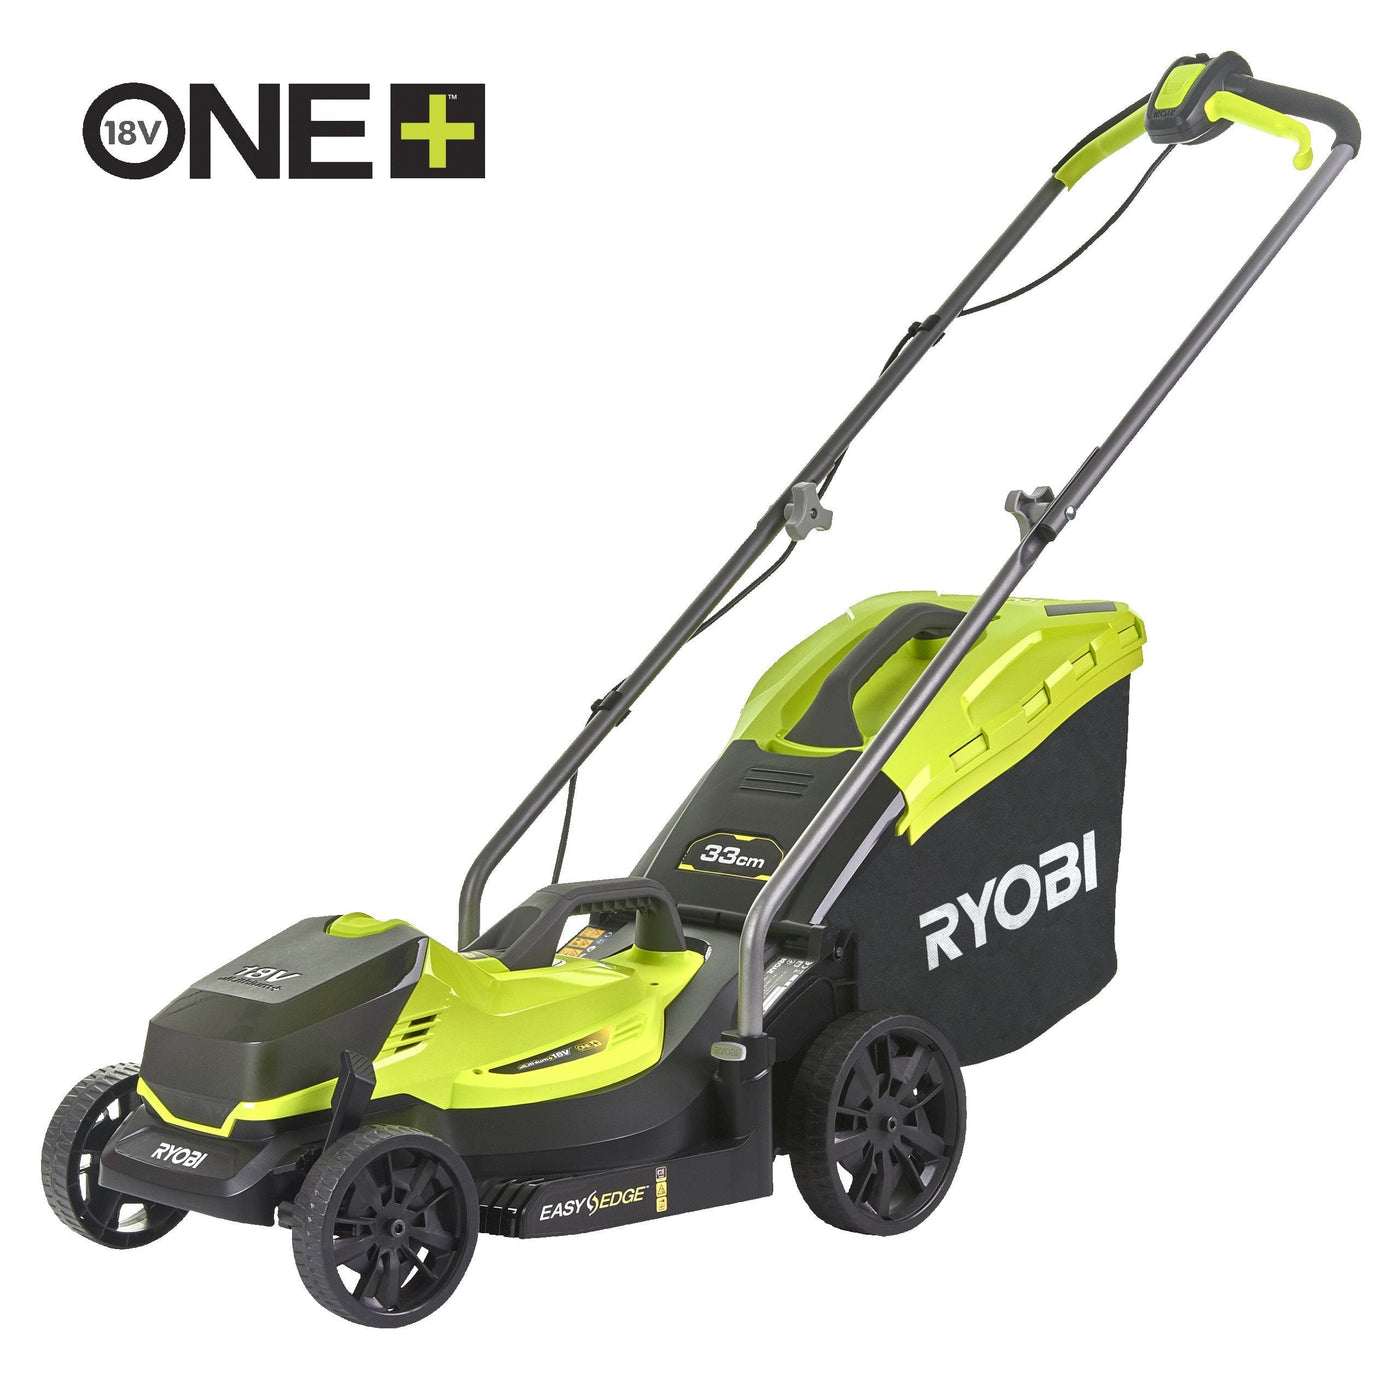 Ryobi OLM1833B 18V ONE+ 33cm Cordless Lawn Mower (Bare Tool)